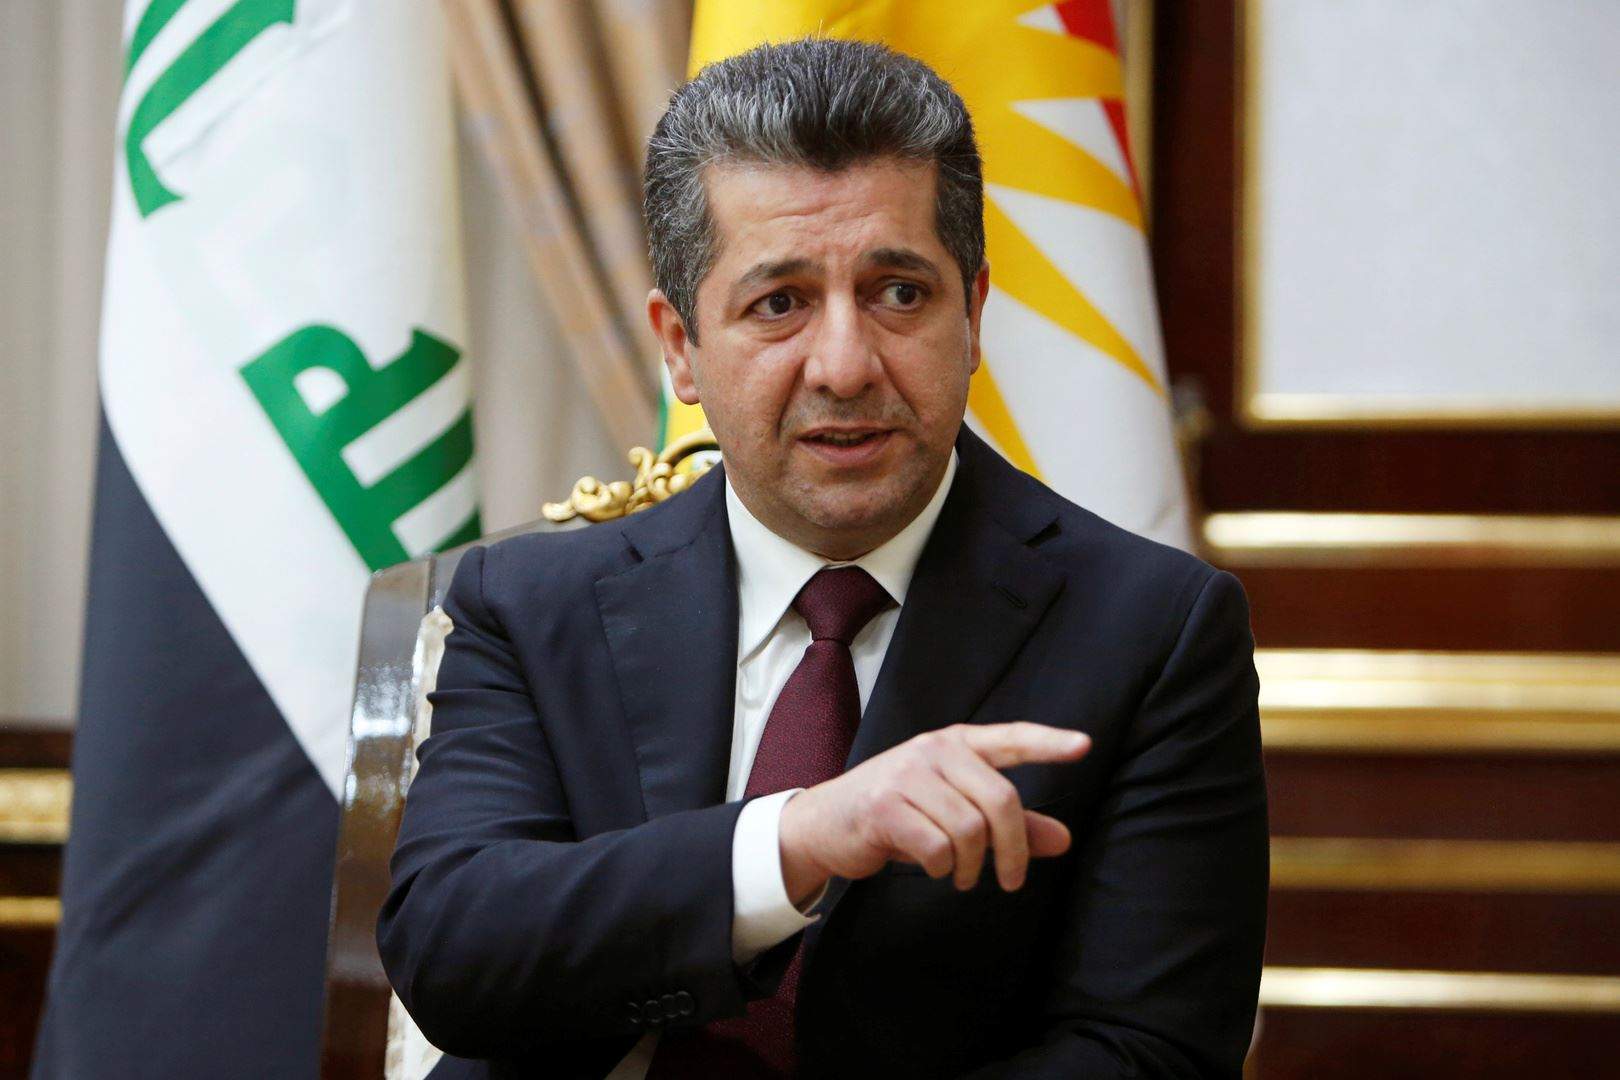 رئيس وزراء كردستان يتوصل لاتفاق مع رئيس الوزراء العراقي بشأن مستحقات الموازنة الاتحادية